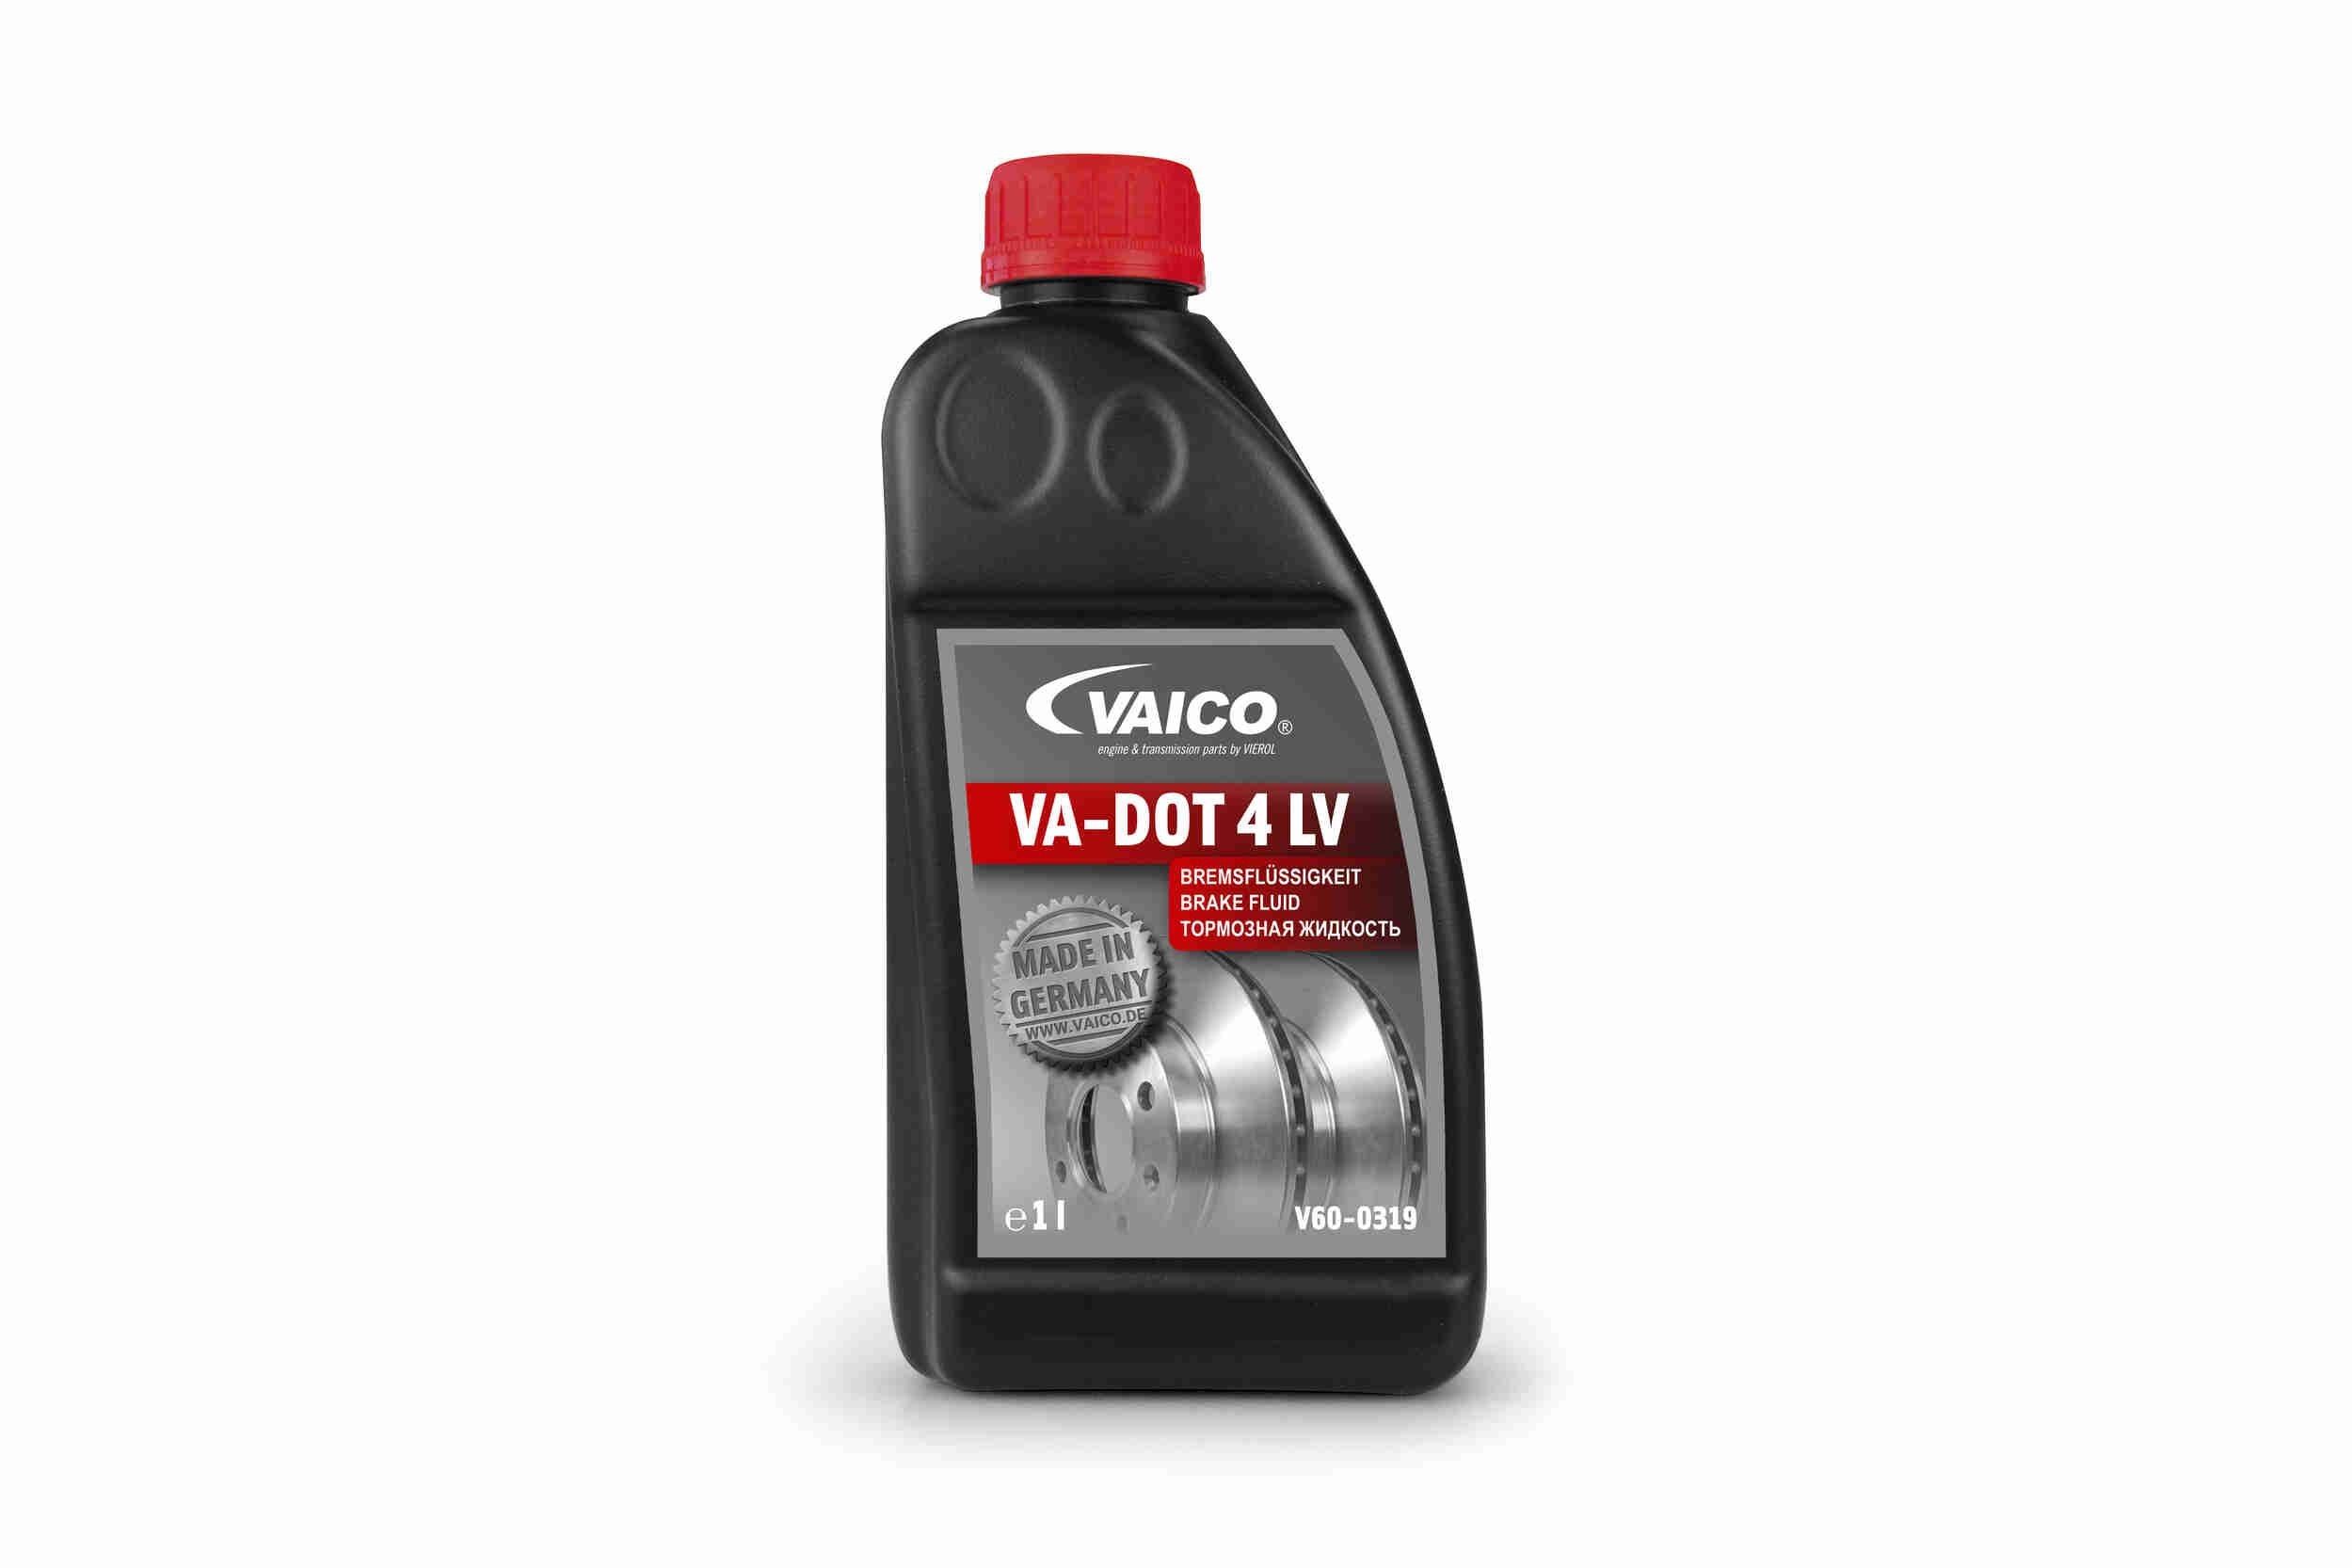 VAICO Brake fluid Mercedes Vito W639 new V60-0319